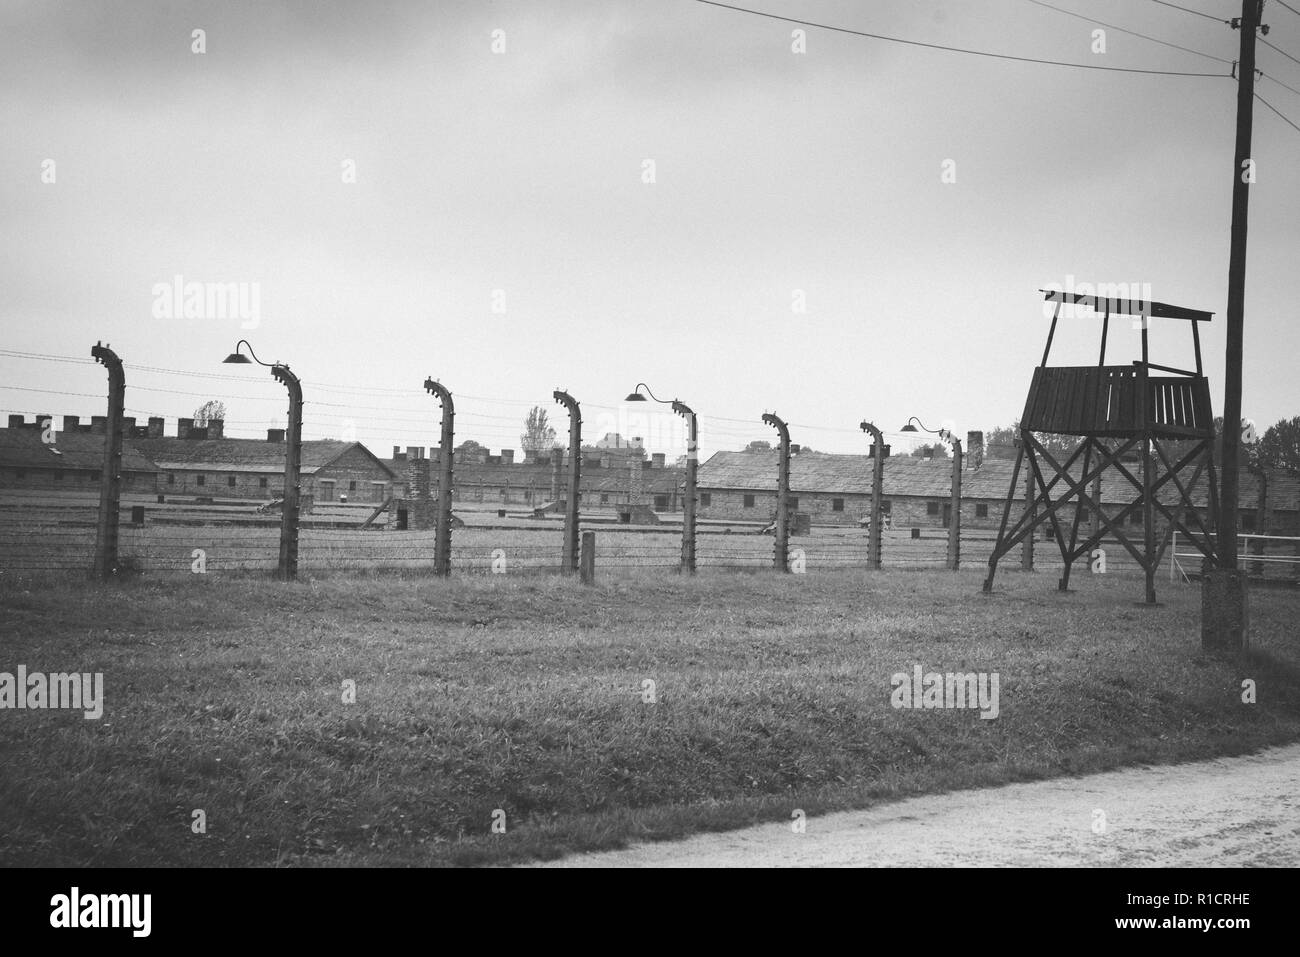 II di Auschwitz Birkenau, campo di lavoro e sterminio nazista. Torre di avvistamento e recinzione. Auschwitz, Tedesco-occupato, Polonia, Europa Foto Stock